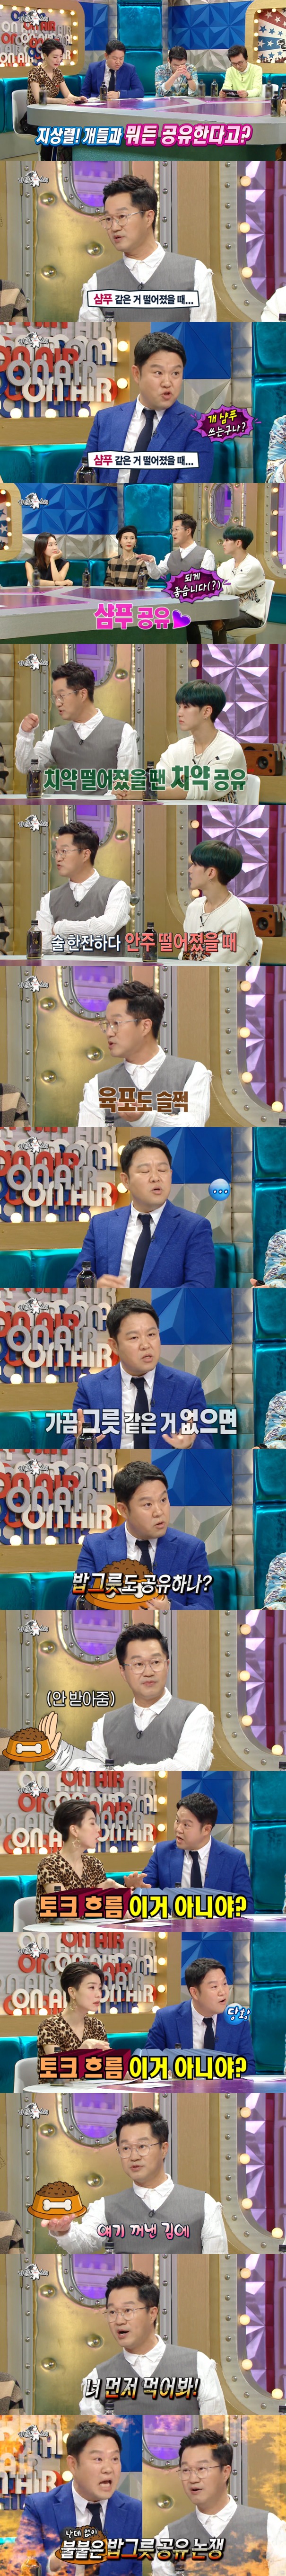 김구라 토크 읽씹하는 지상렬